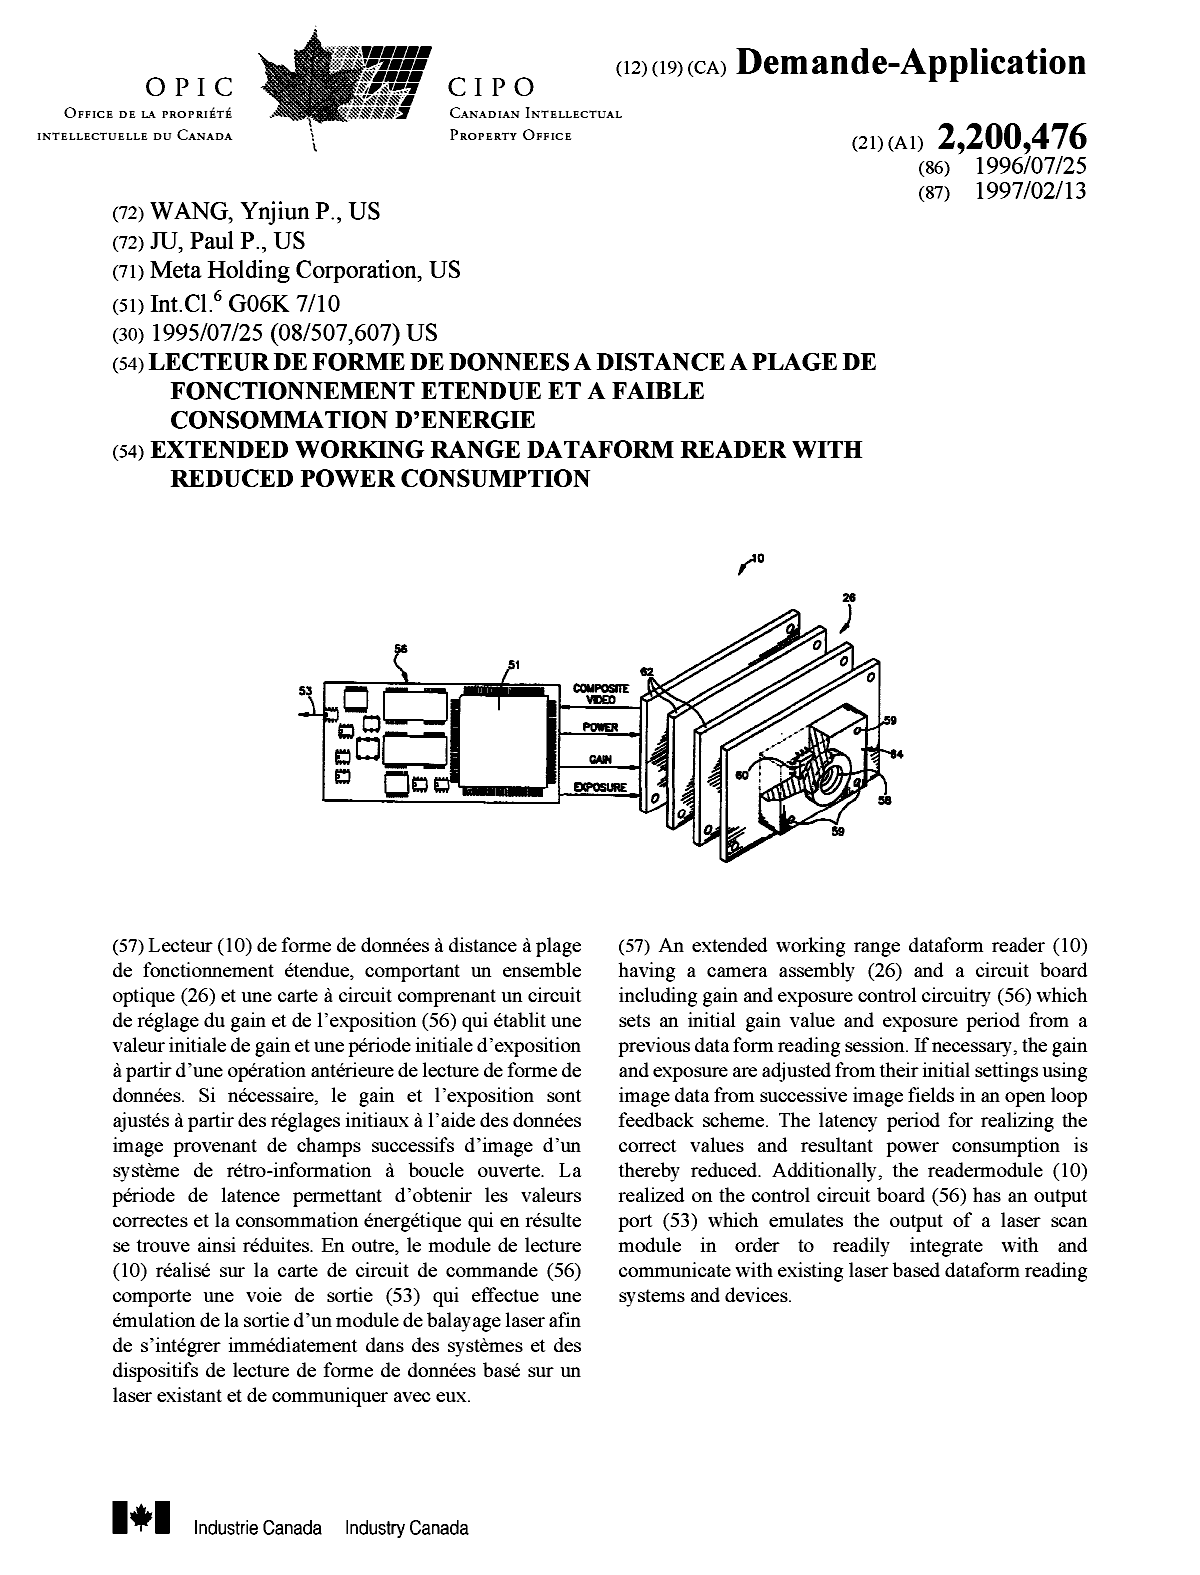 Document de brevet canadien 2200476. Page couverture 19970916. Image 1 de 1